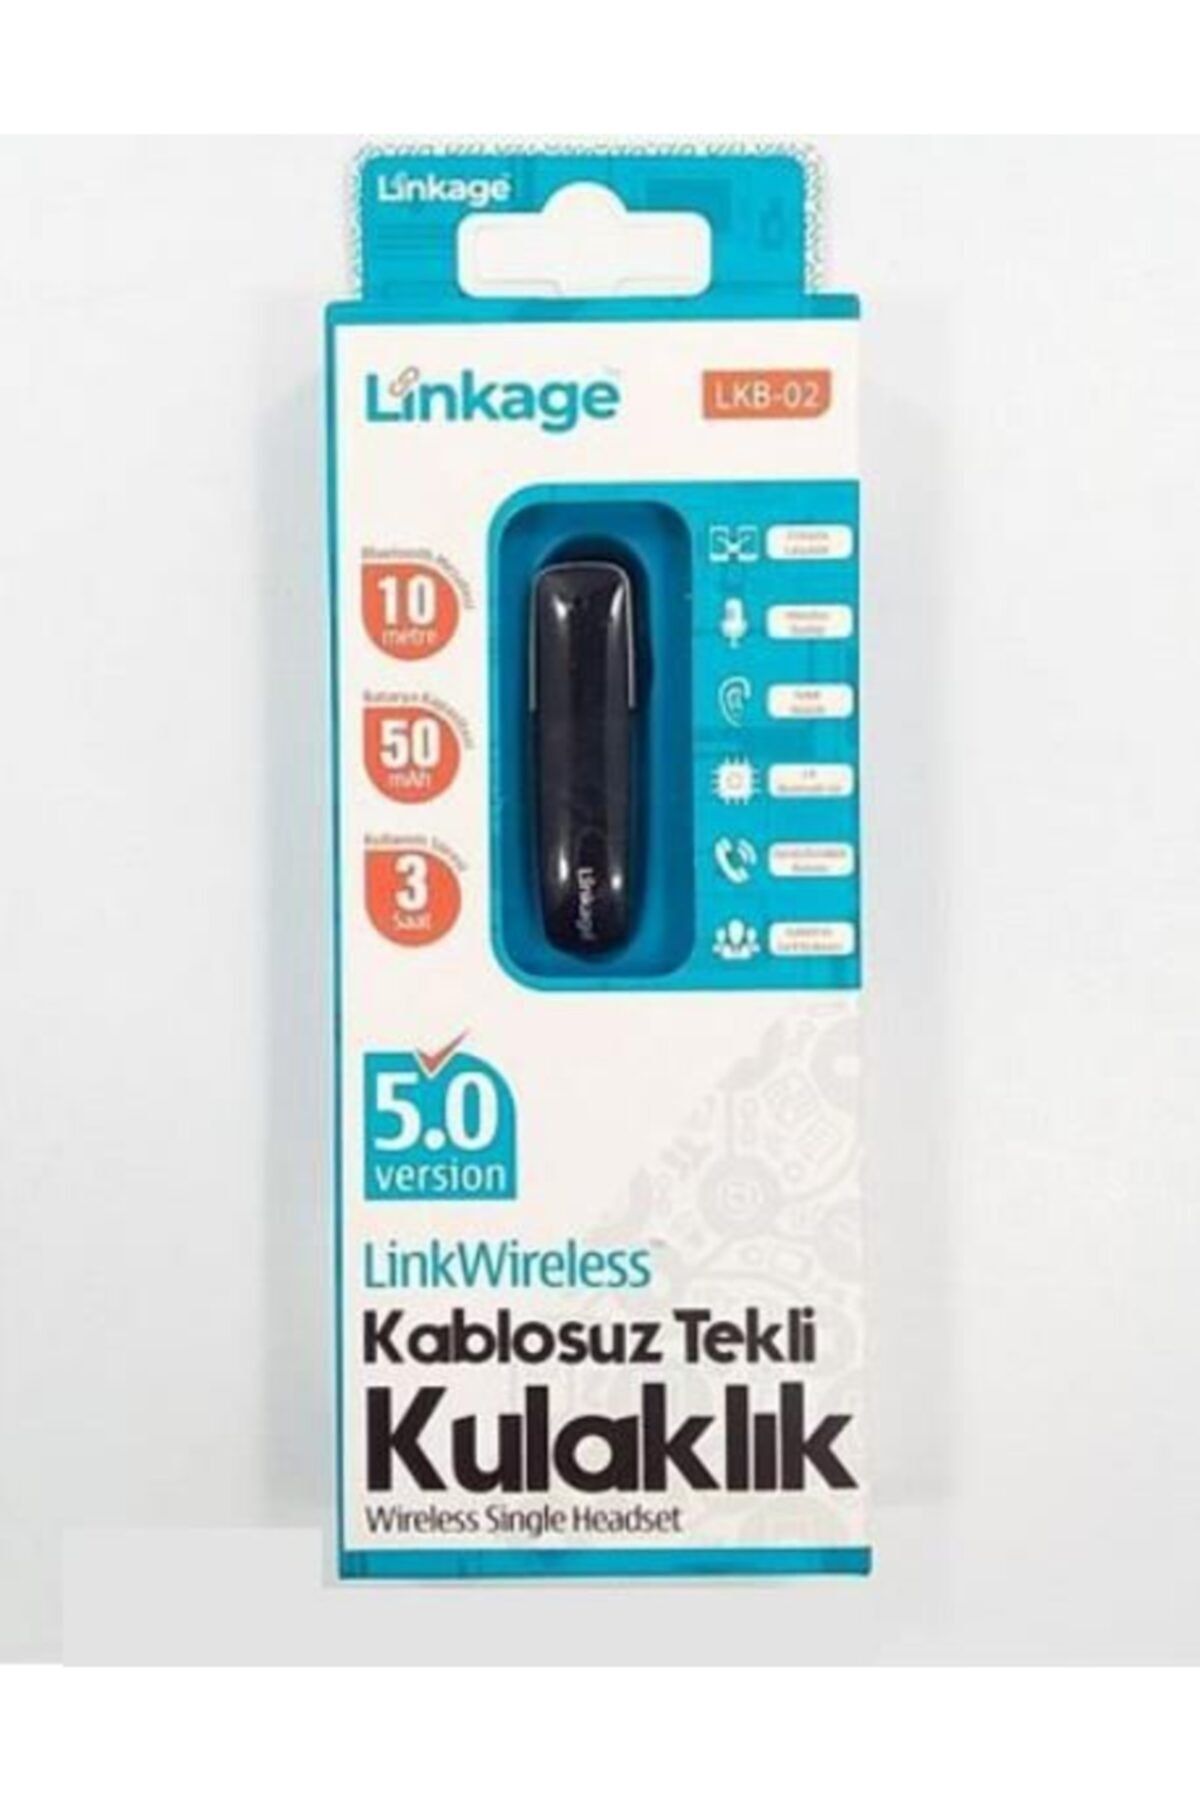 Linkage 5.0 Kablosuz Tekli Mikrofonlu Bluetooth Kulaklık Çift Cihaz Uyumlu Araç Kiti + Yedek Silikon